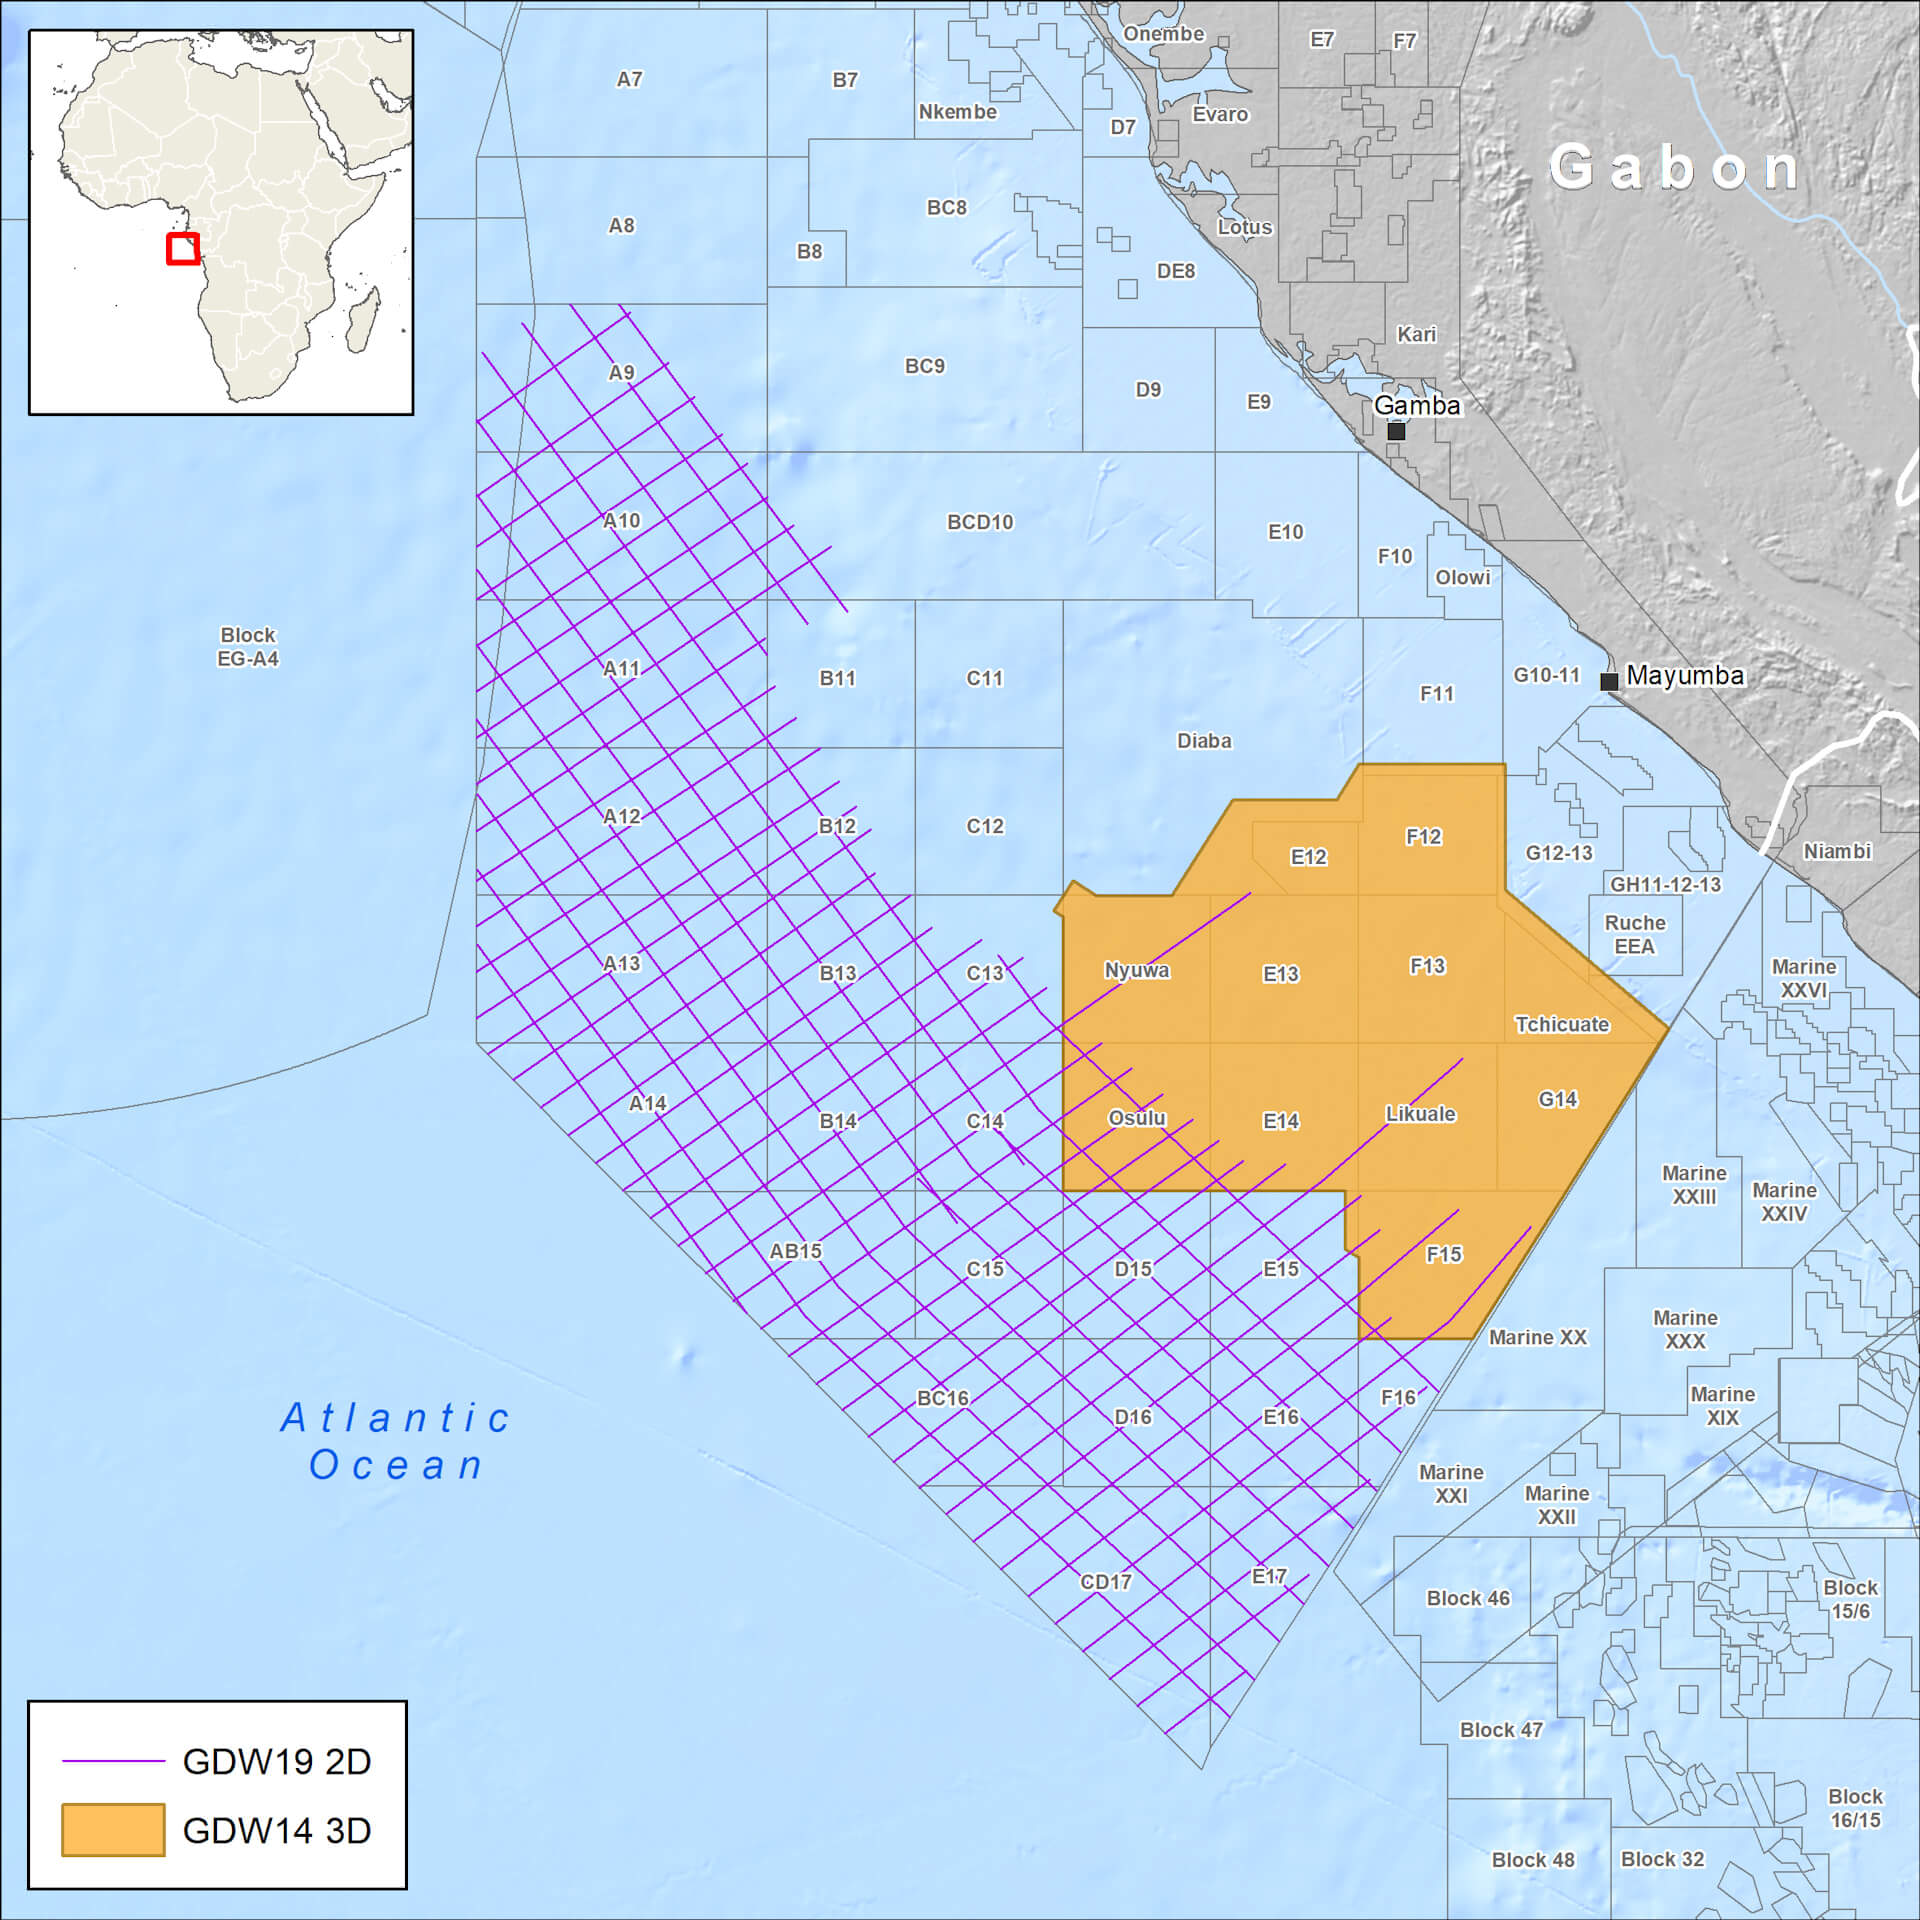 Multi-client seismic surveys – Gabon